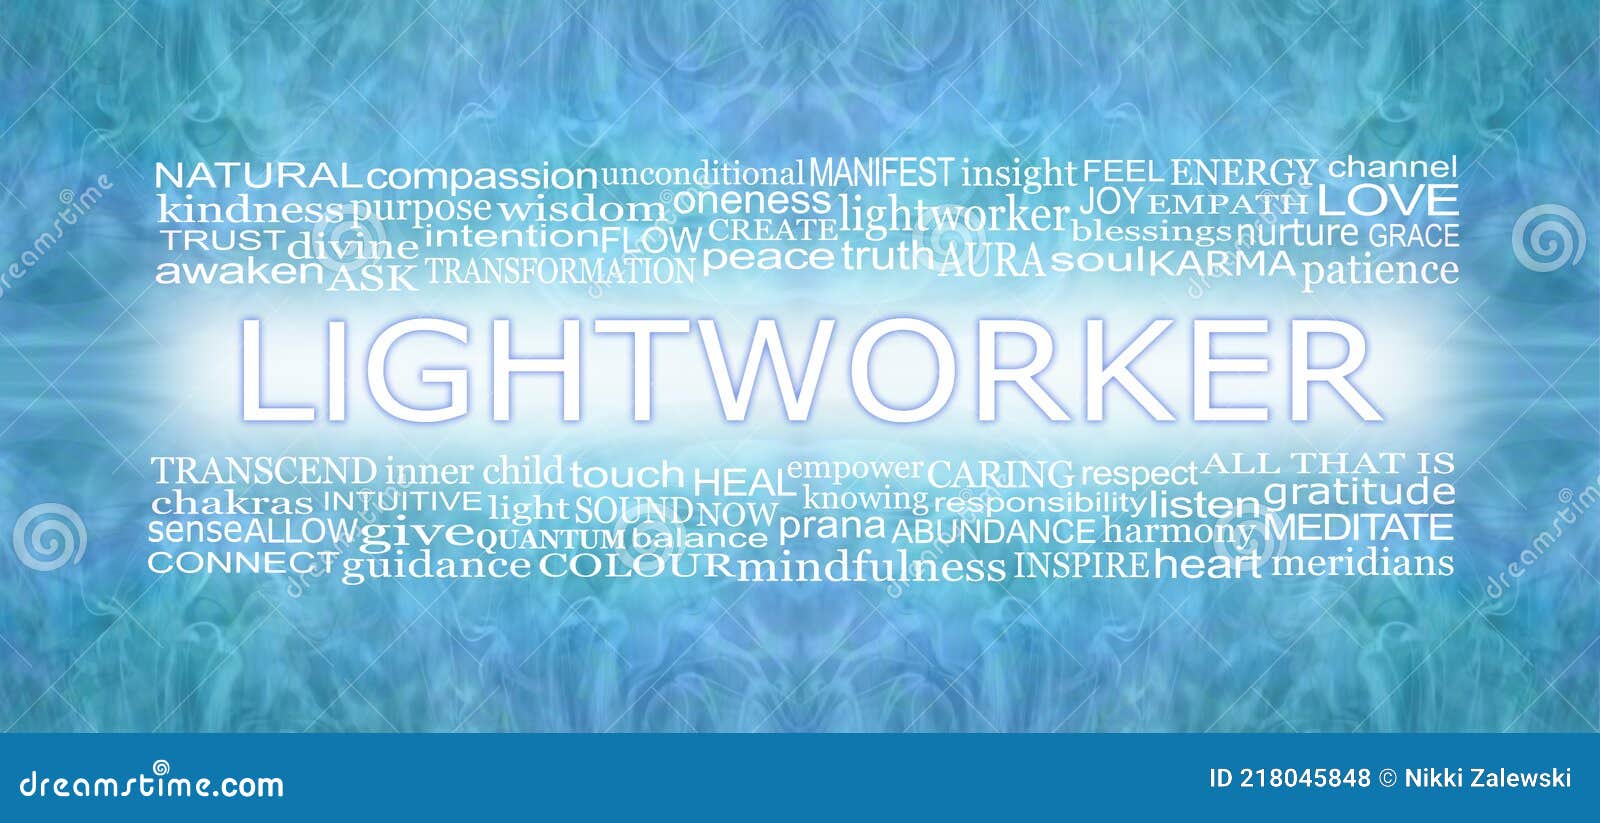 words associated with spiritual lightworker healing blue banner